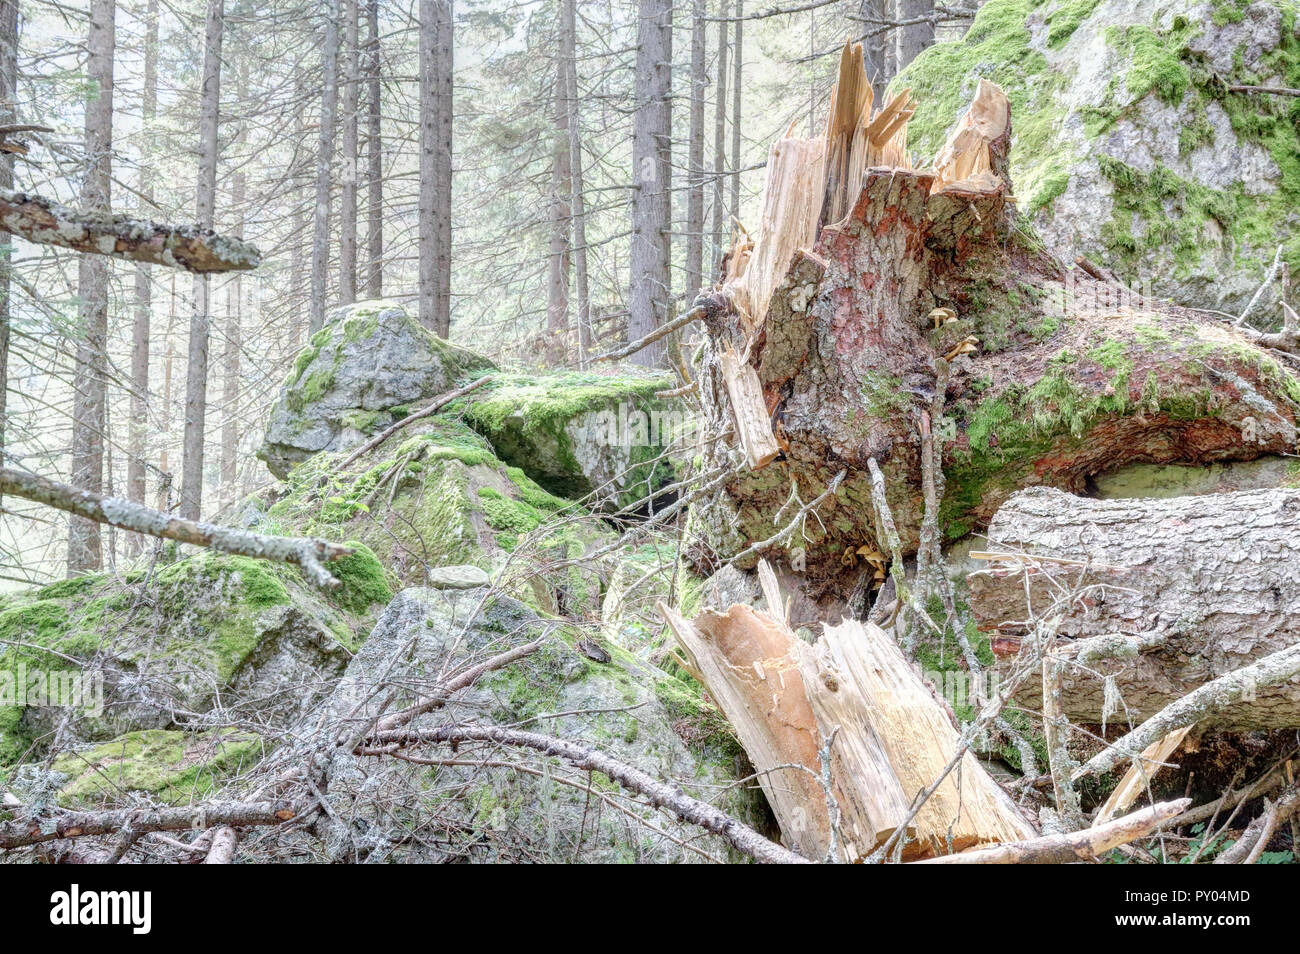 Ein gebrochener Kiefer Baumstumpf mit etwas Holz- Moos bedeckt Protokolle mit Motorsäge schnitt durch Holzfäller, im Val d'Otro Tal, Alpen, Piemont, Italien Stockfoto